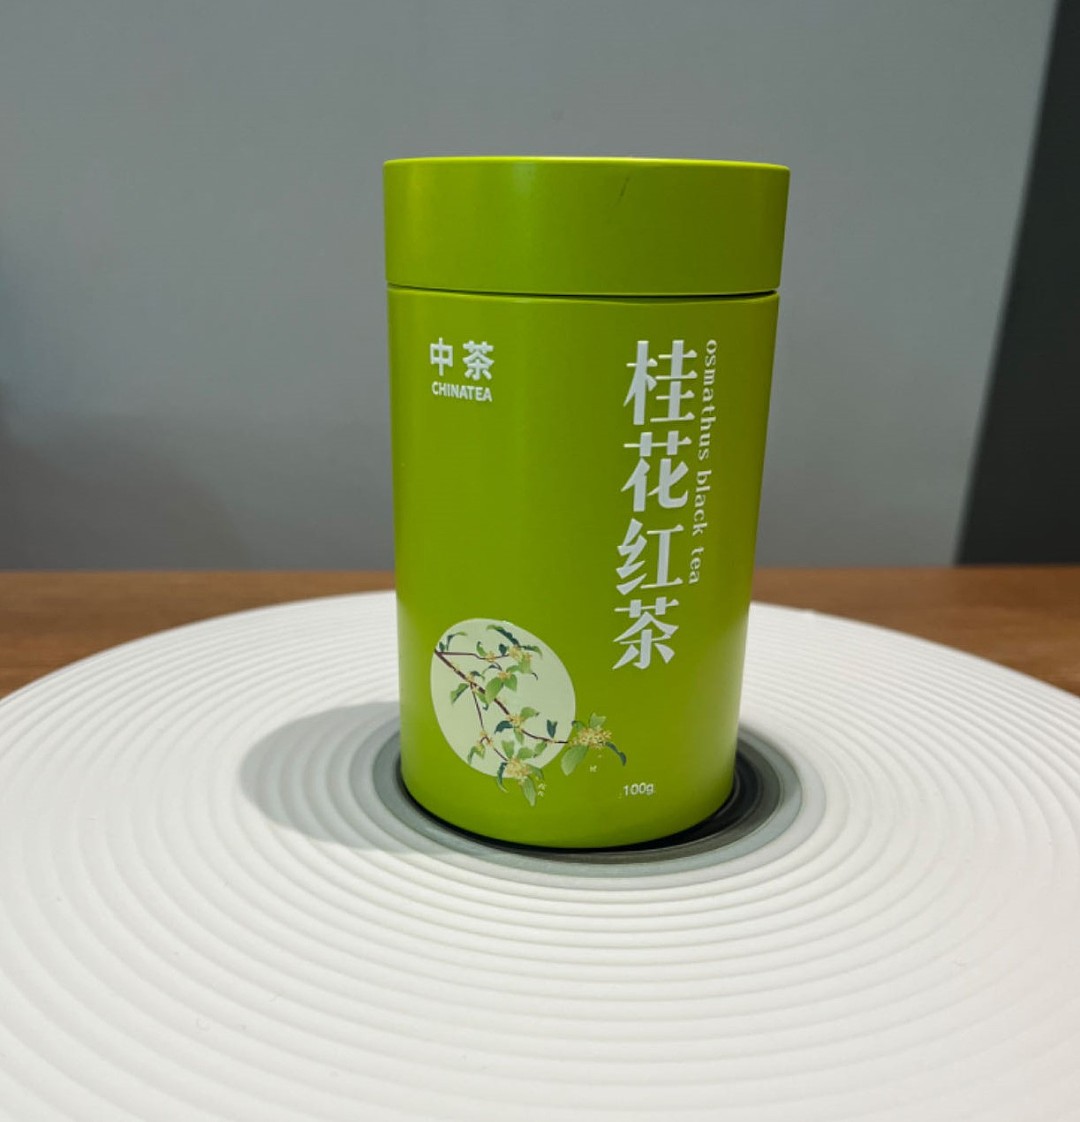 CHINATEA 桂花红茶 100g